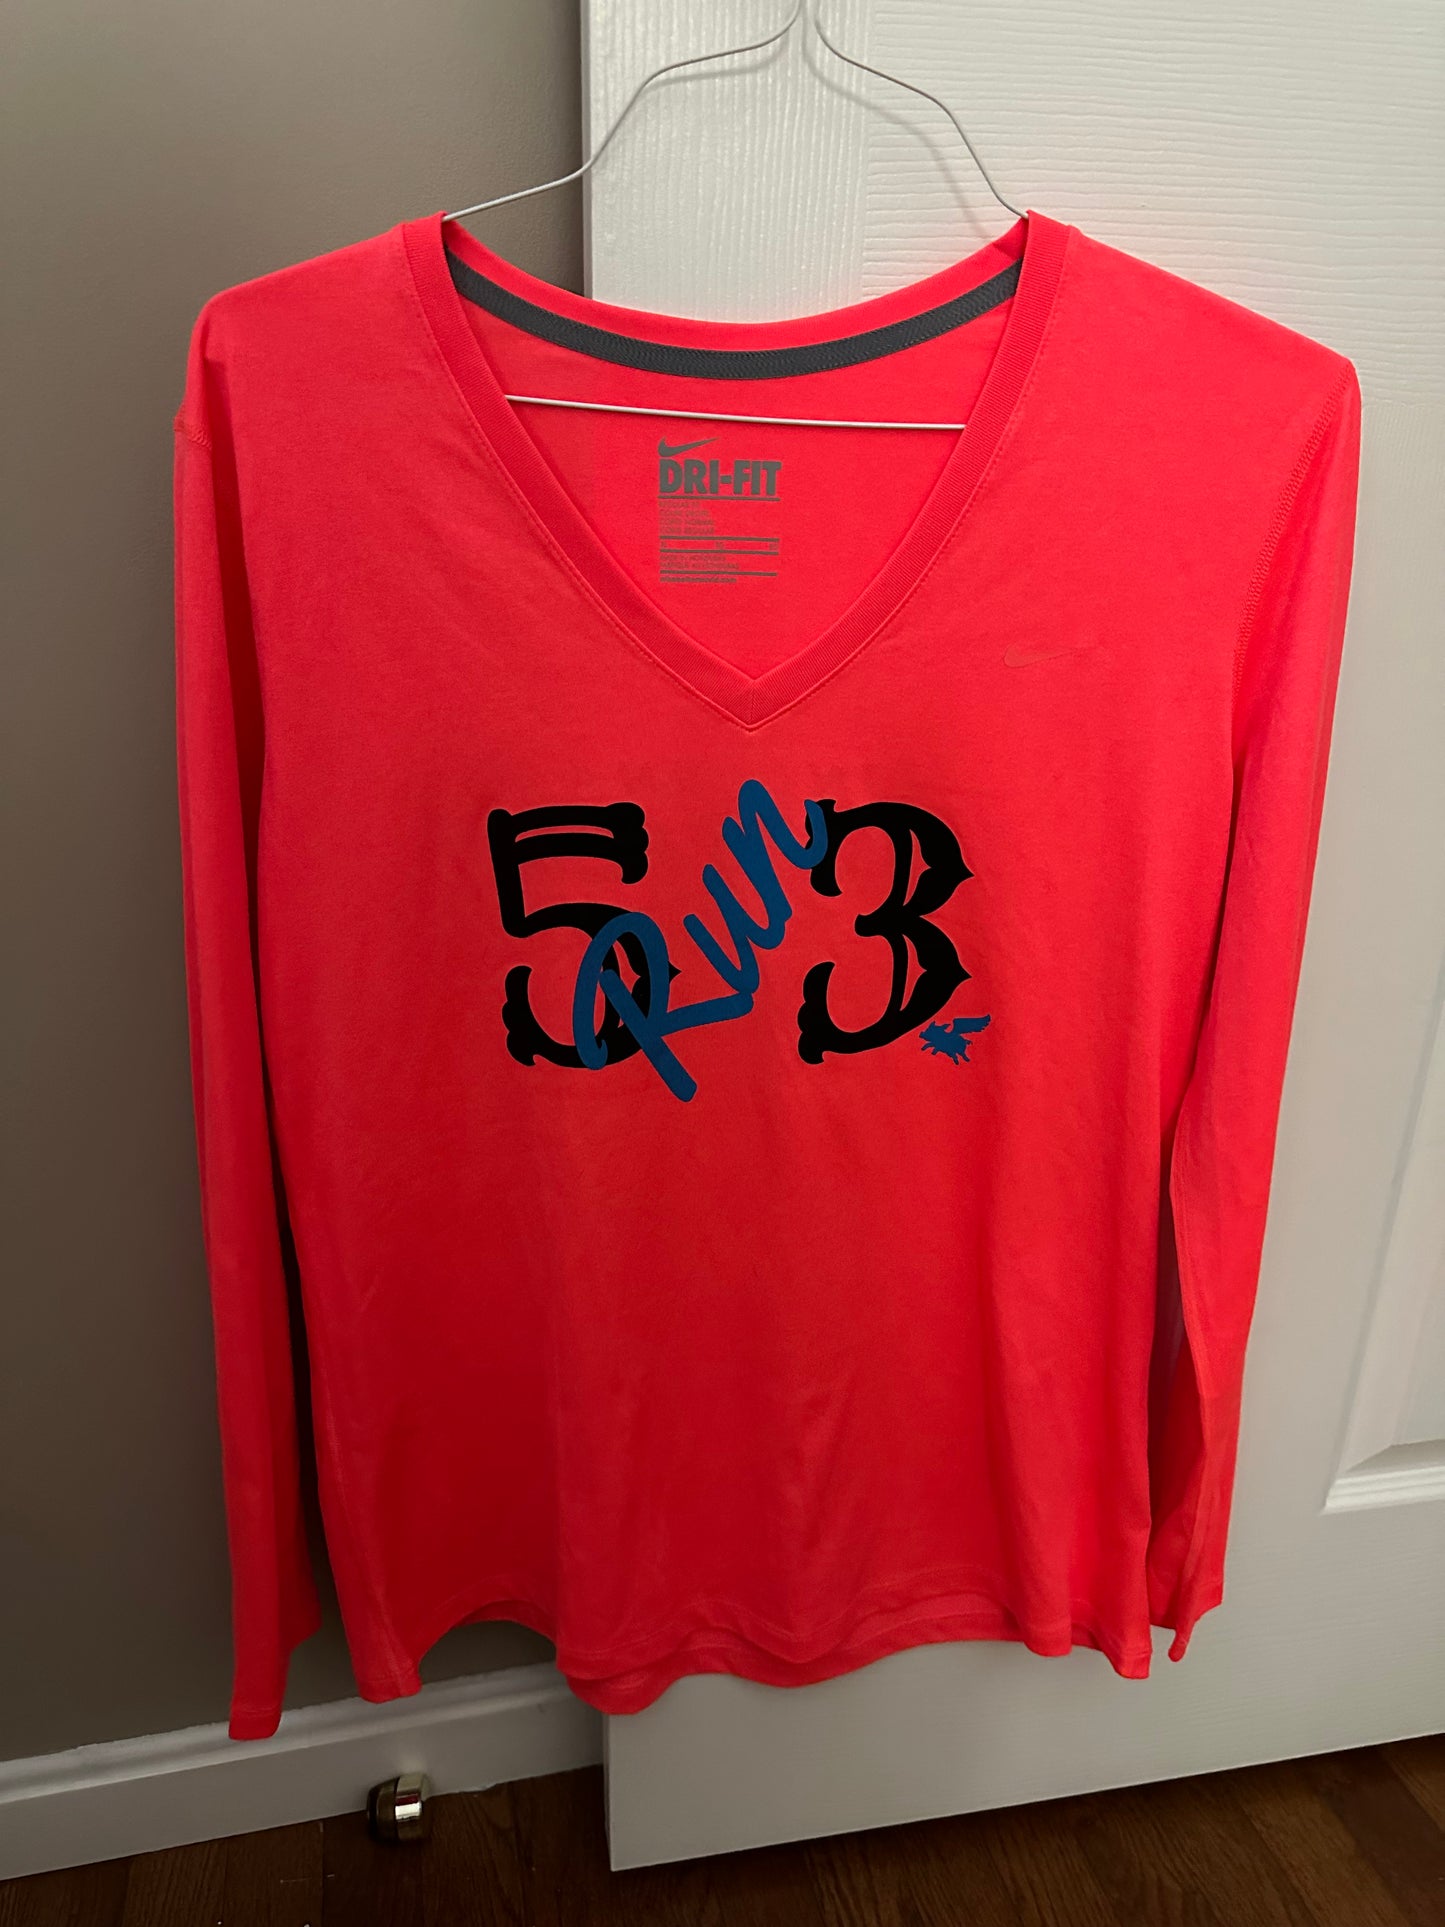 5(run)3 dri fit shirt size XL